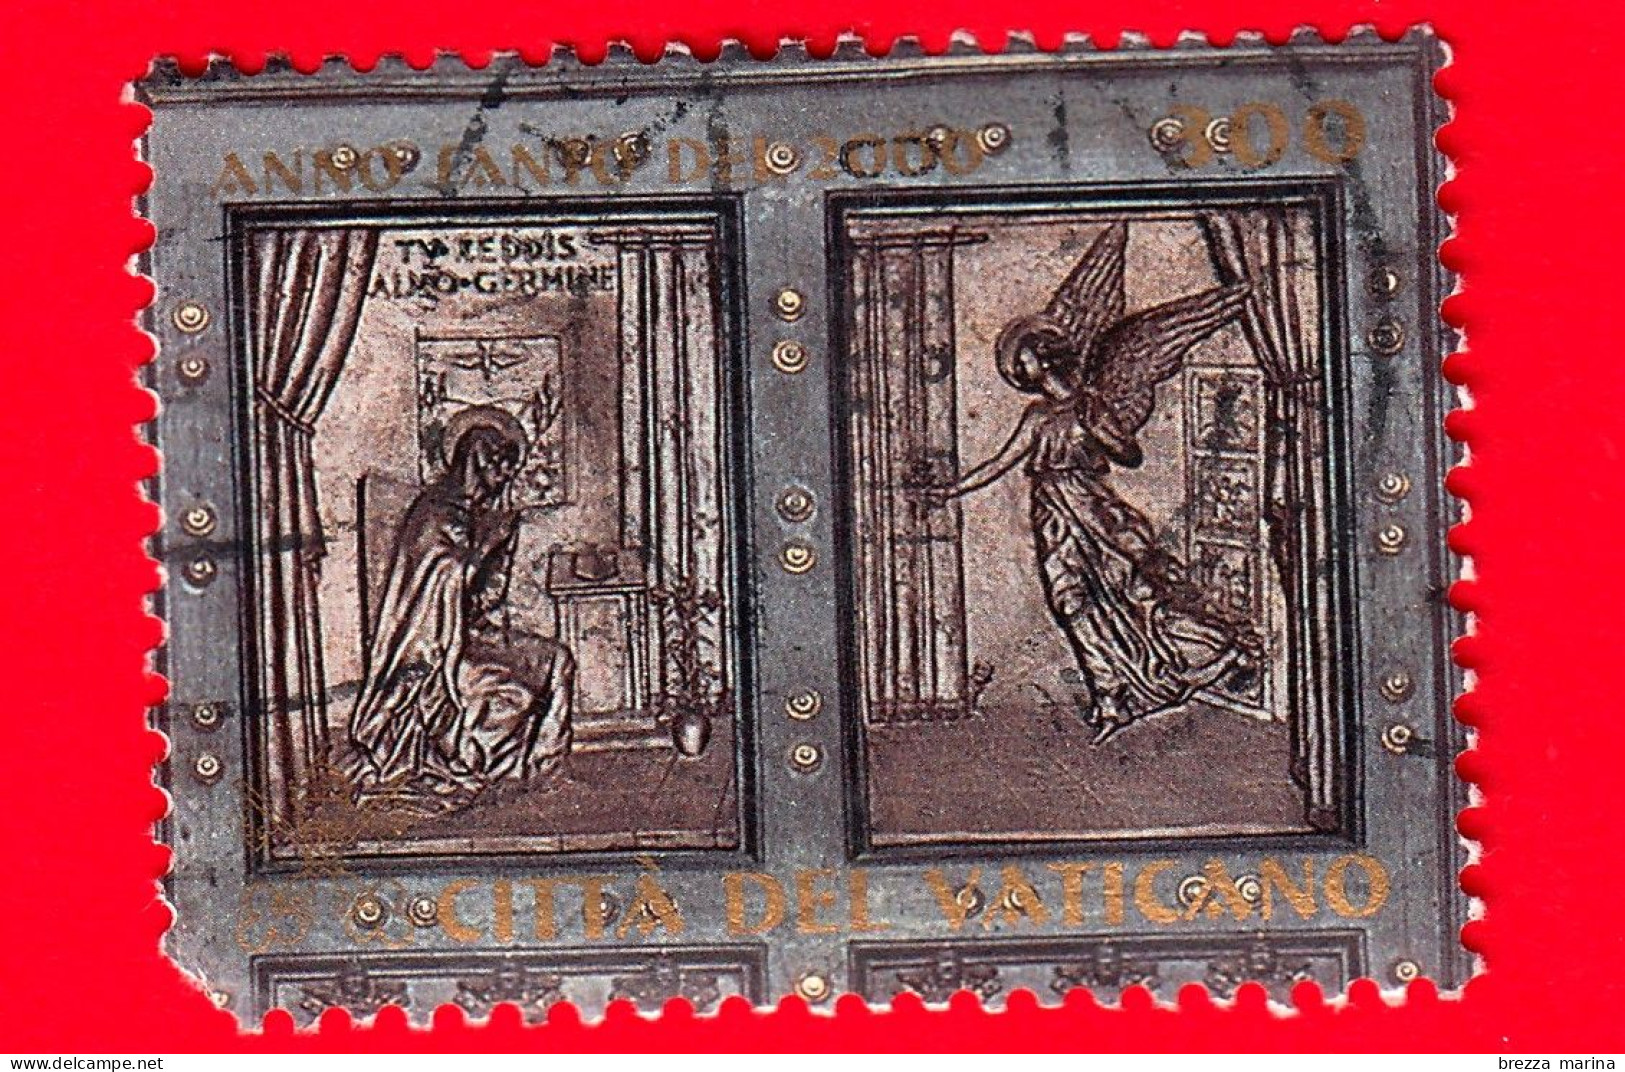 VATICANO - Usato - 1999 - Apertura Della Porta Santa In S. Pietro - Annunciazione E Angelo - 300 - Used Stamps